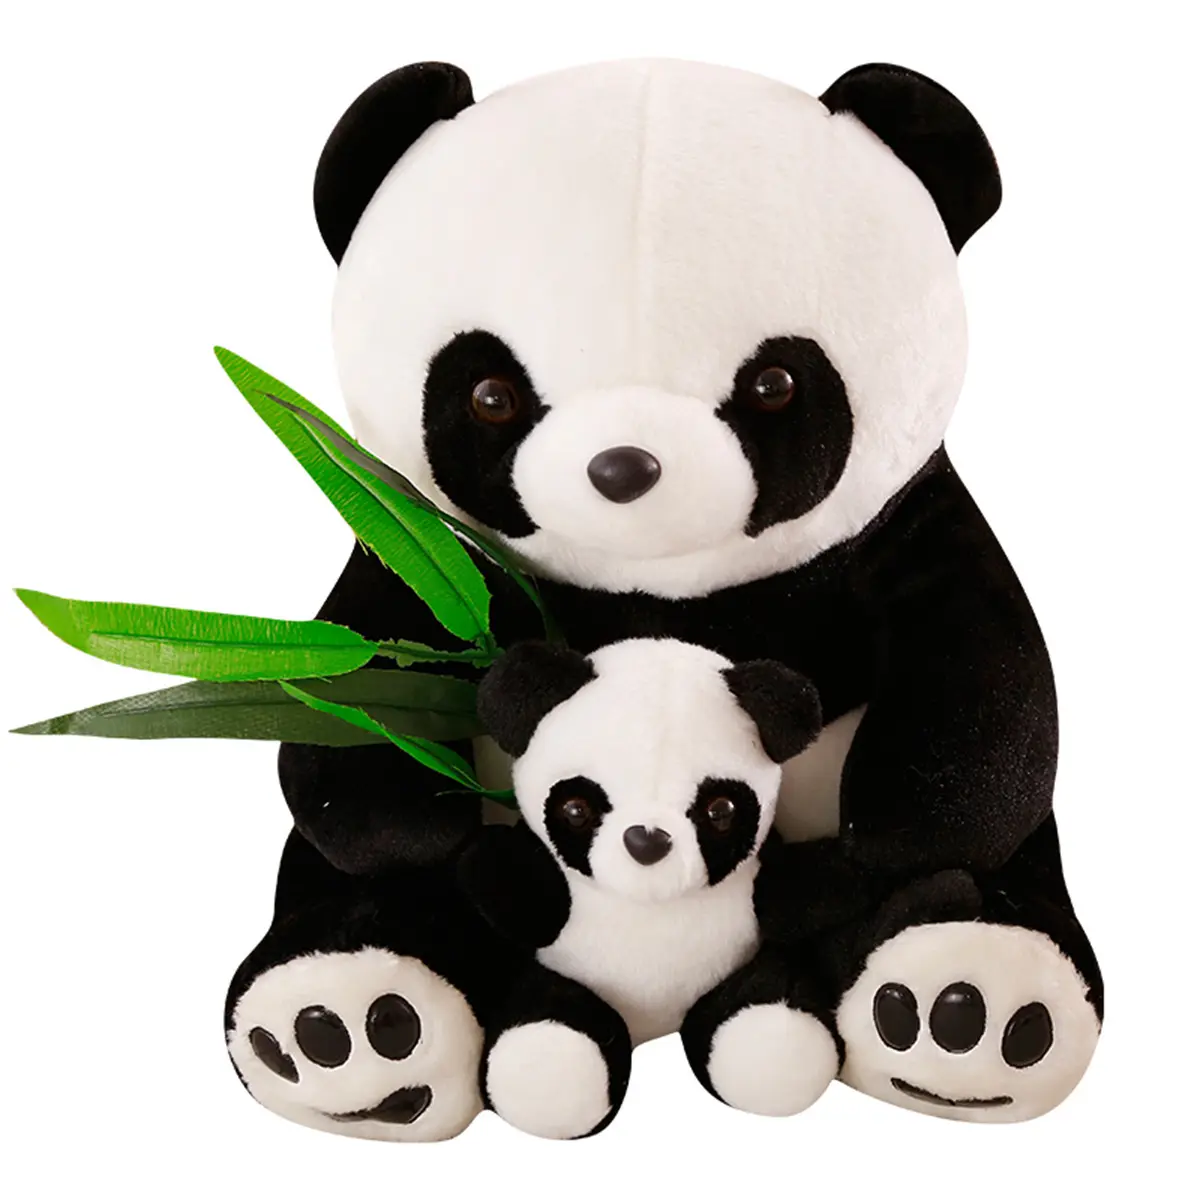 OEM En Stock Asiento Panda Peluche Juguete Sosteniendo una Madre e Hijo de Bambú Panda Recuerdo Muñeca Almohada para Dormir PARA EL Cumpleaños DE LOS Niños